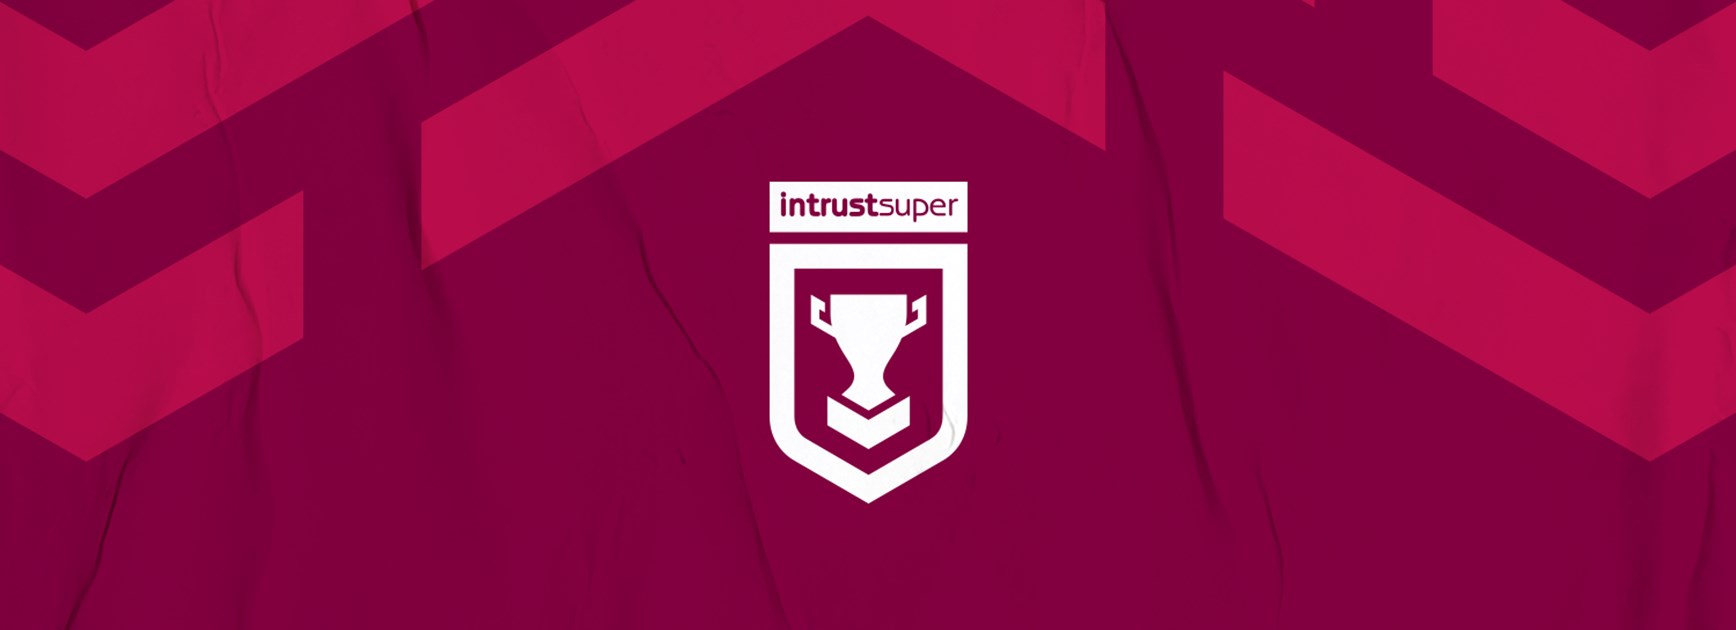 Intrust Super Cup Round 12 teams